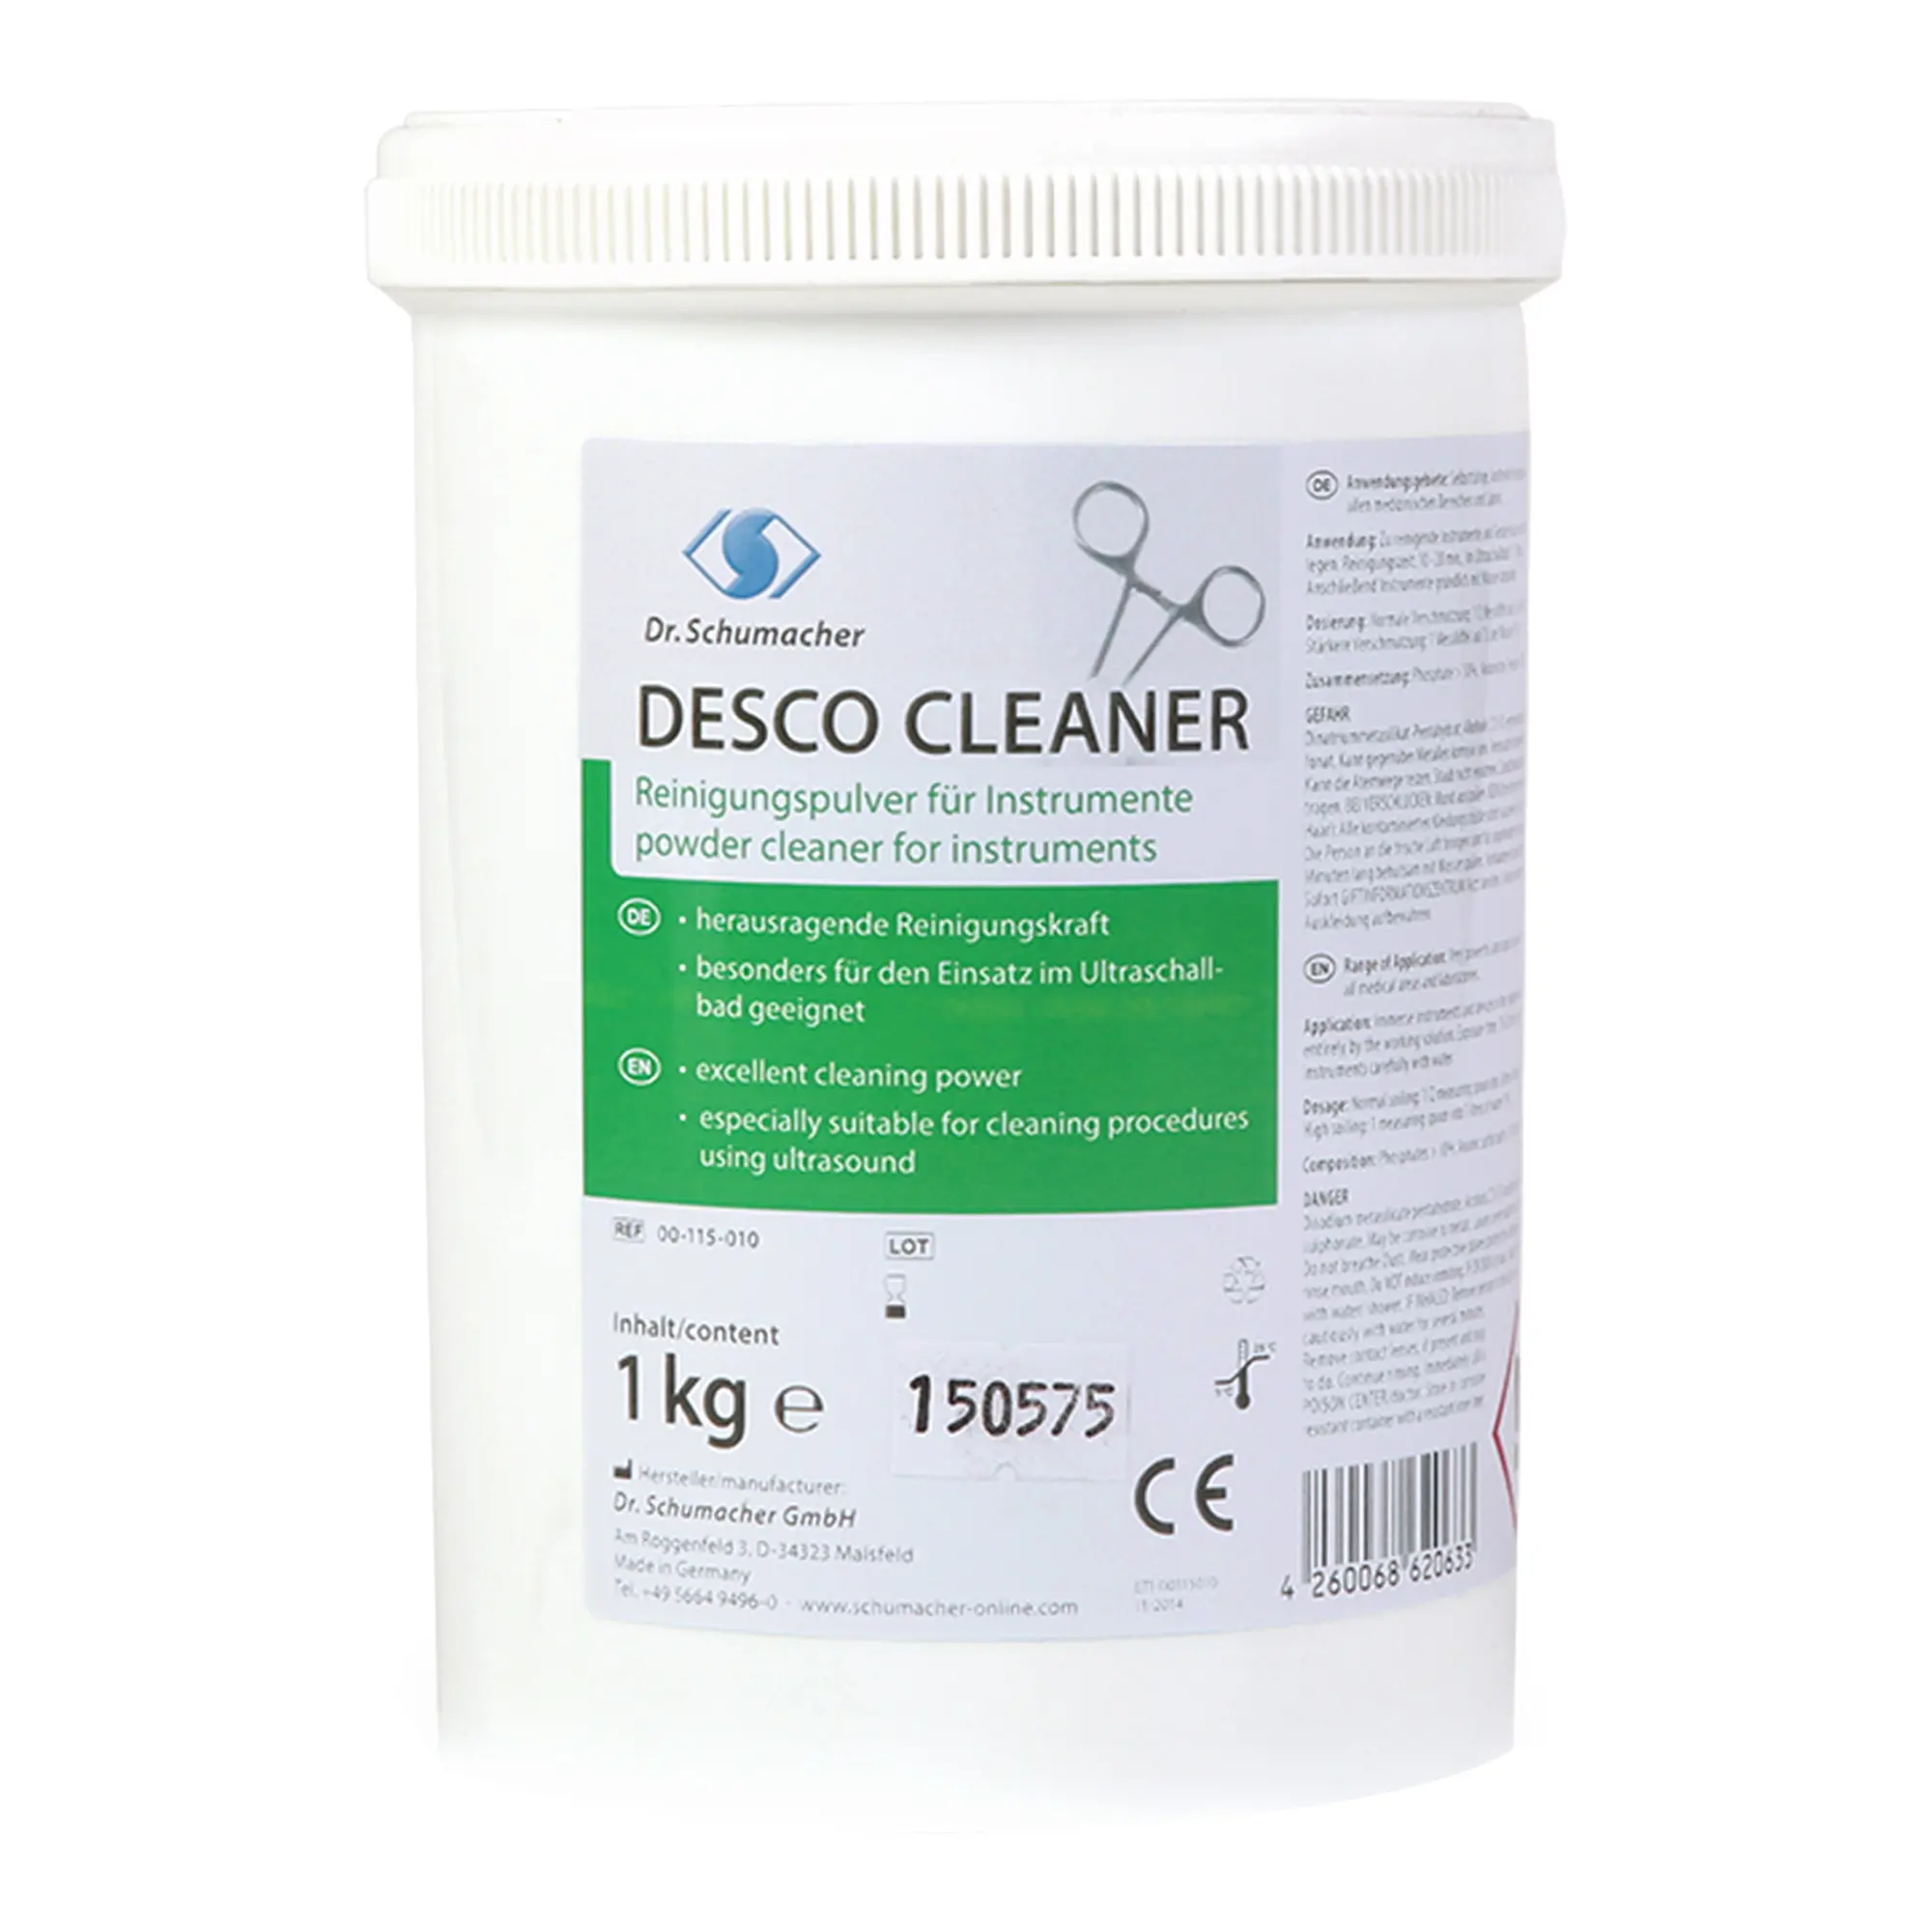 Dr. Schumacher Desco Cleaner Reinigungspulver Instrumente 1 kg Dose 00-115-010_1